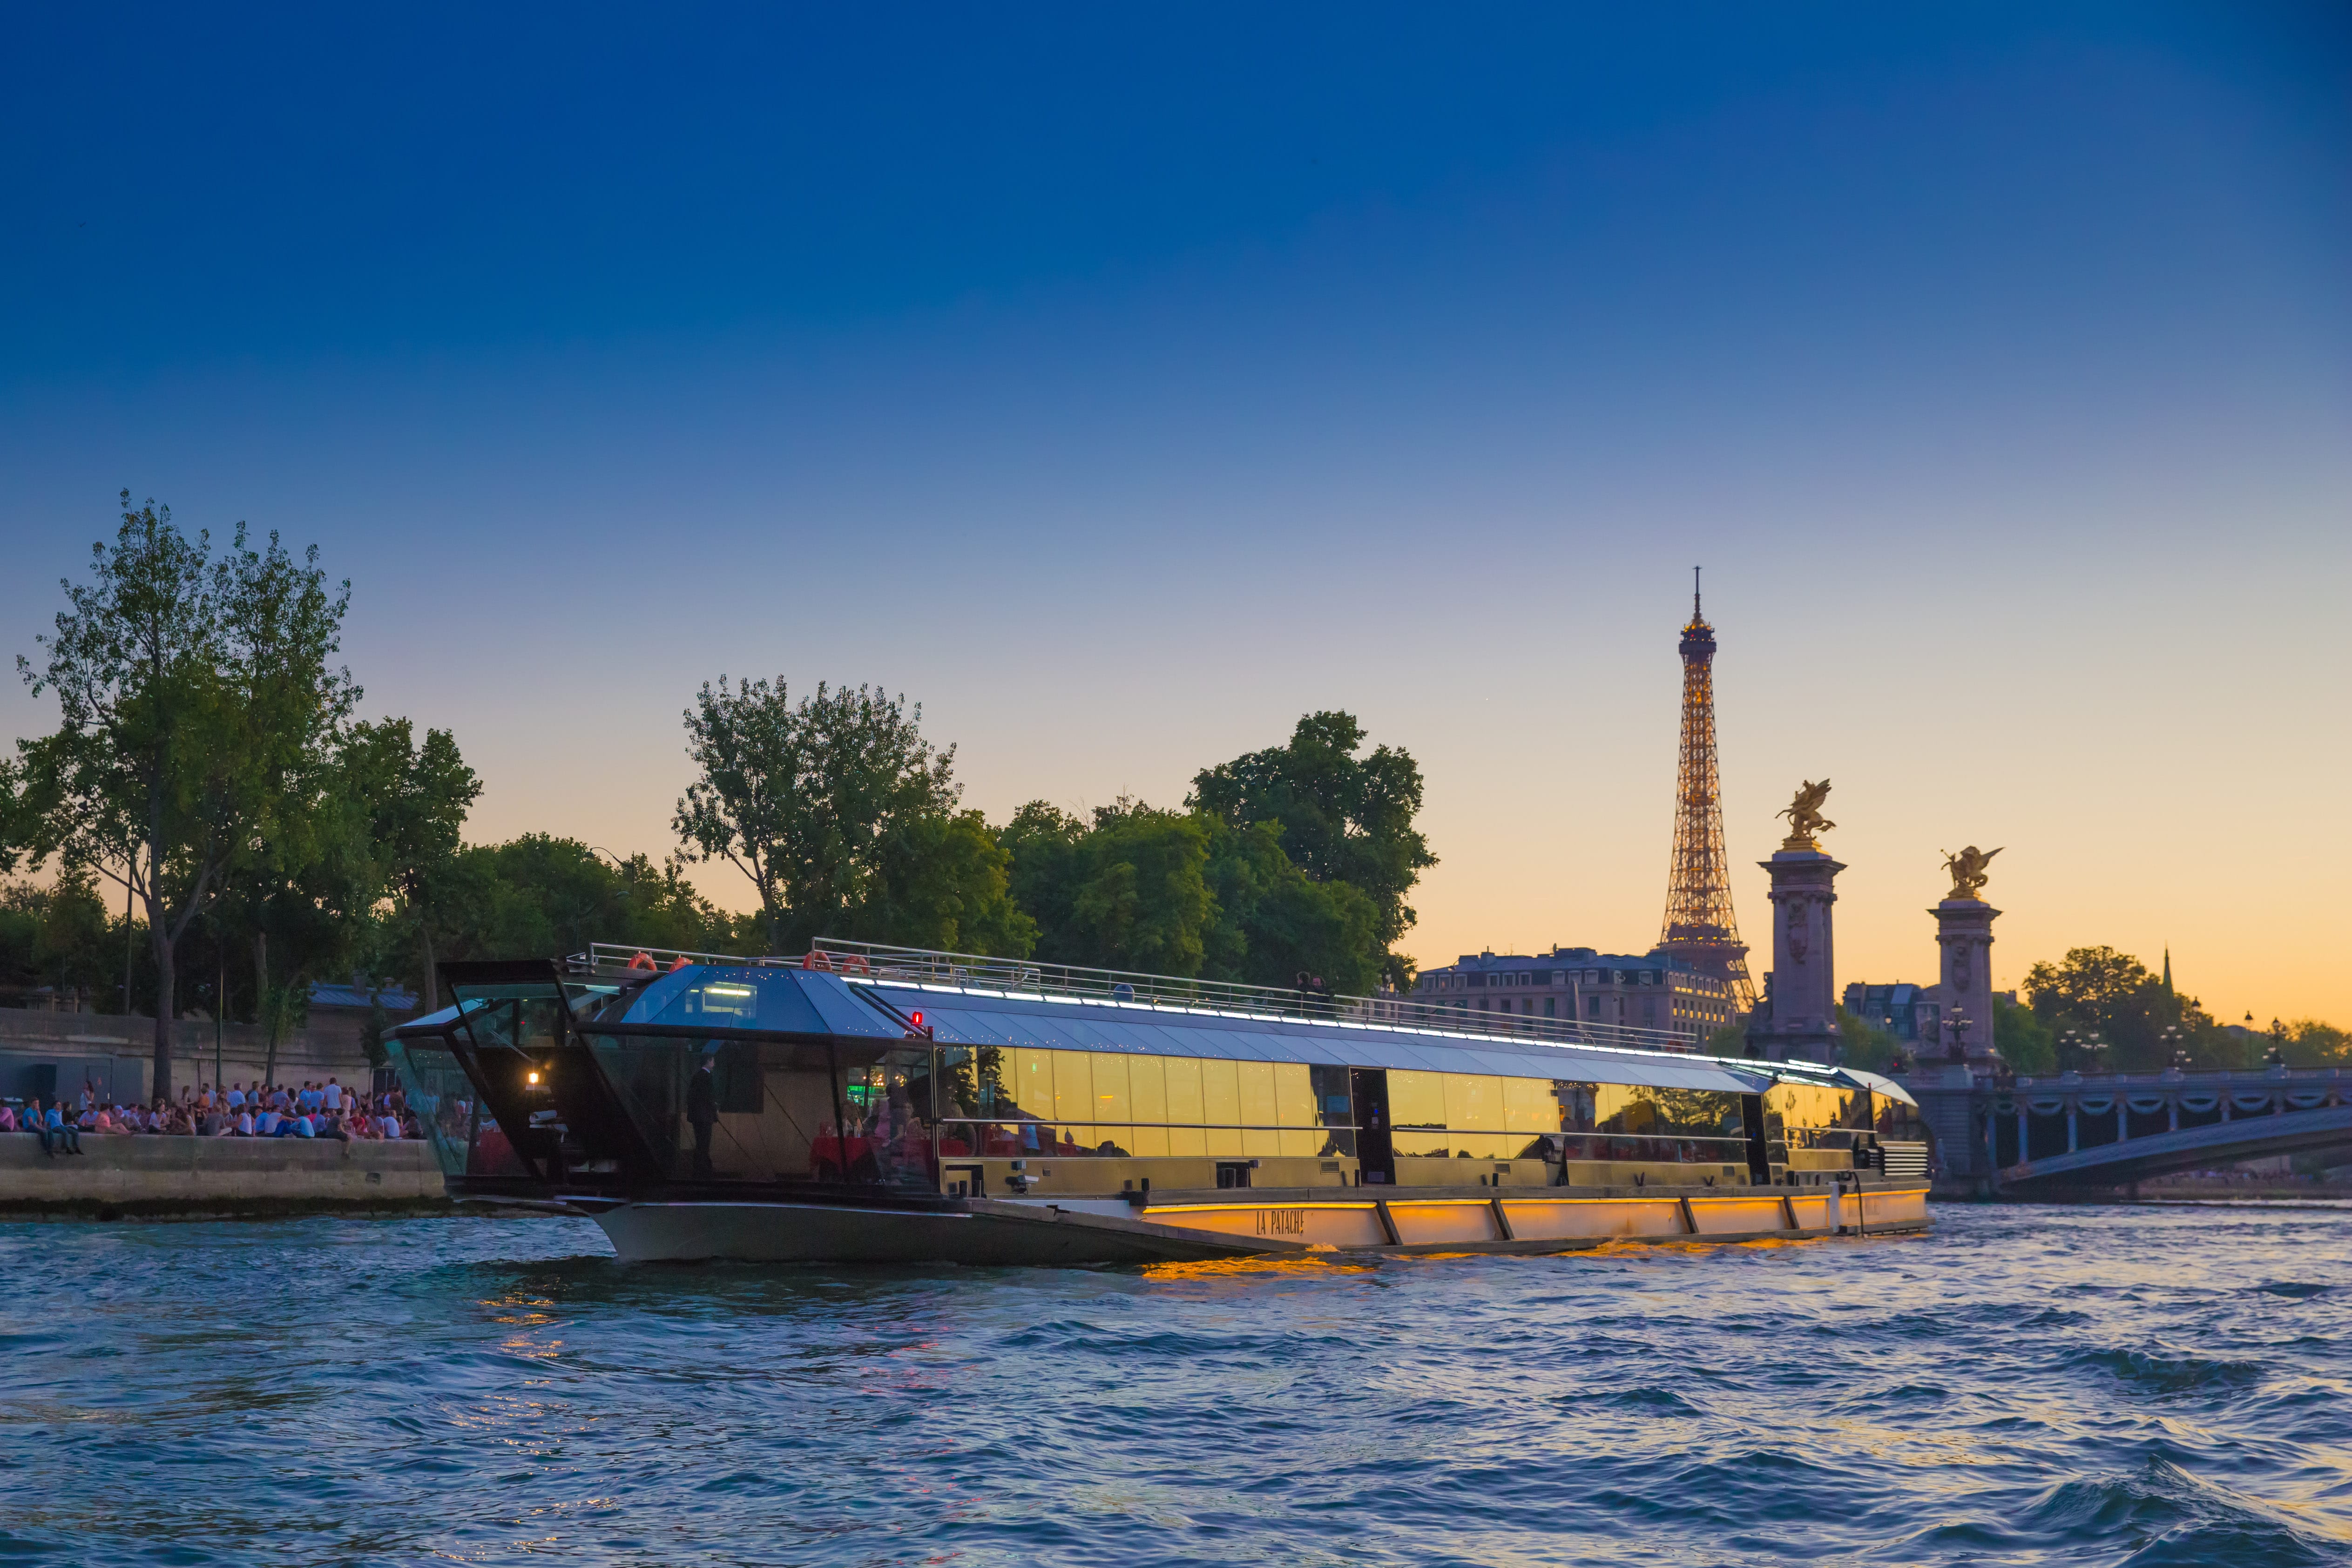 bateaux parisiens vs bateaux mouches dinner cruise